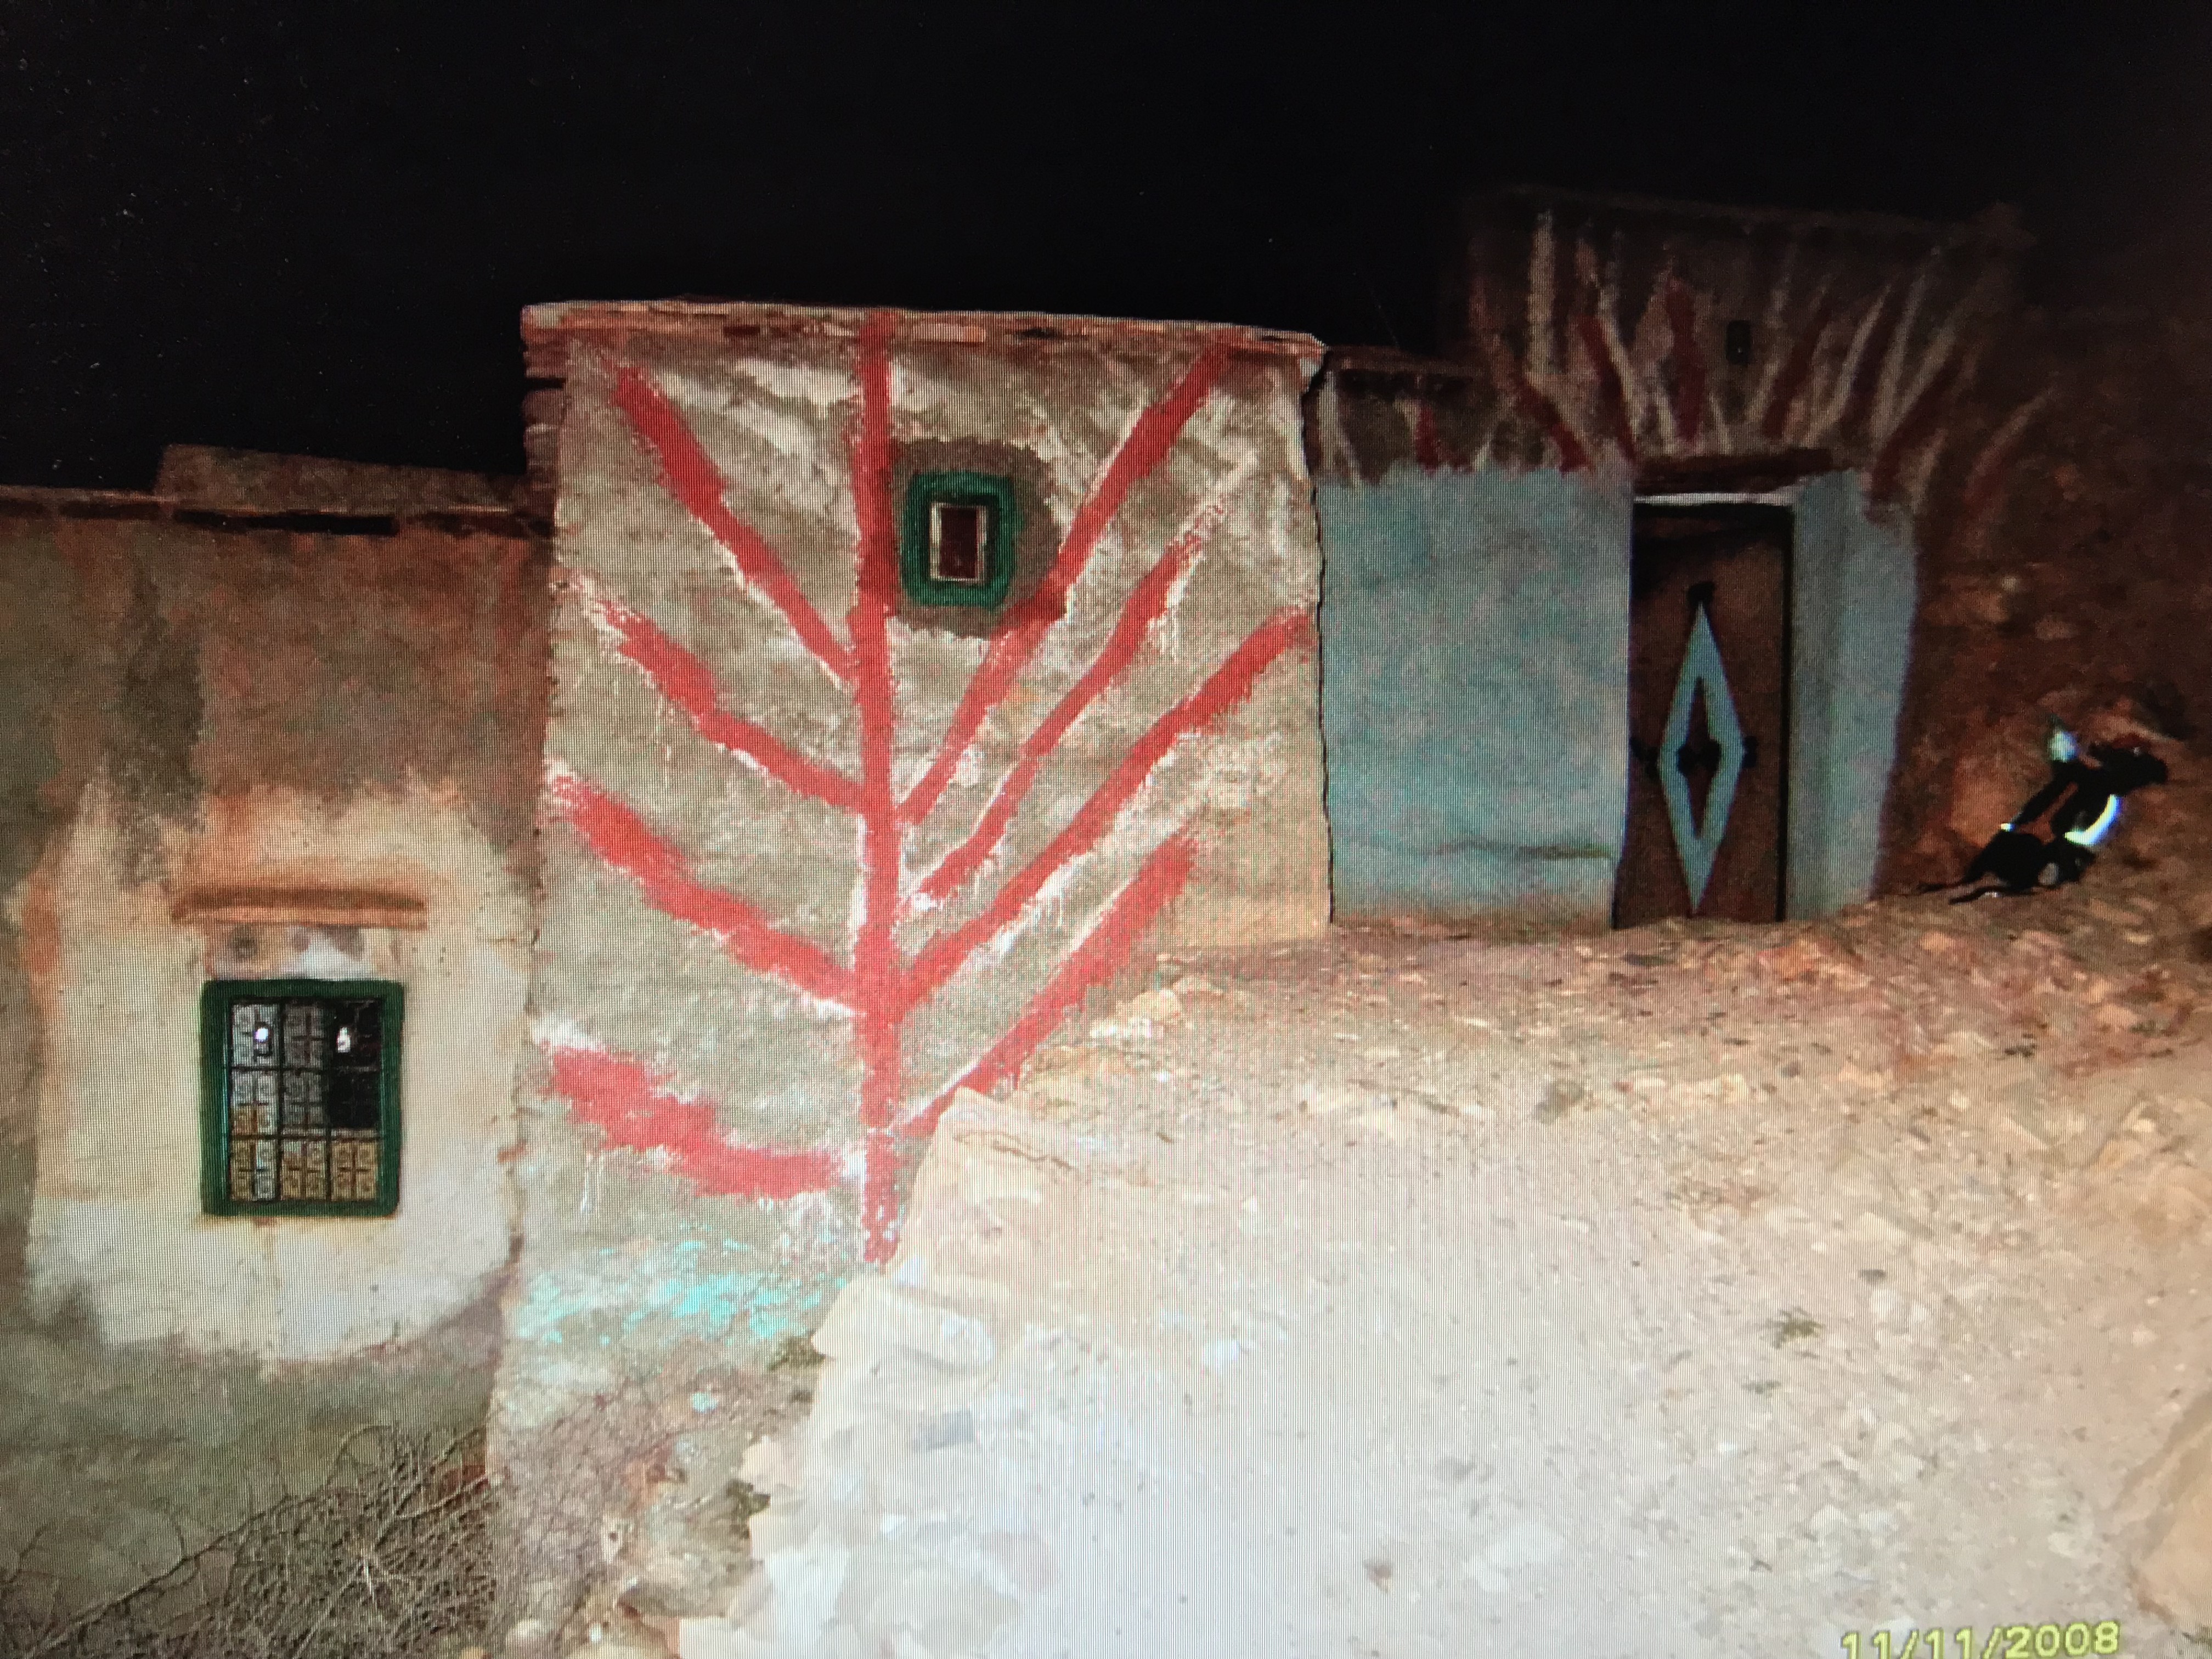 Målad husfasad i Atlasbergen av södra Marocko